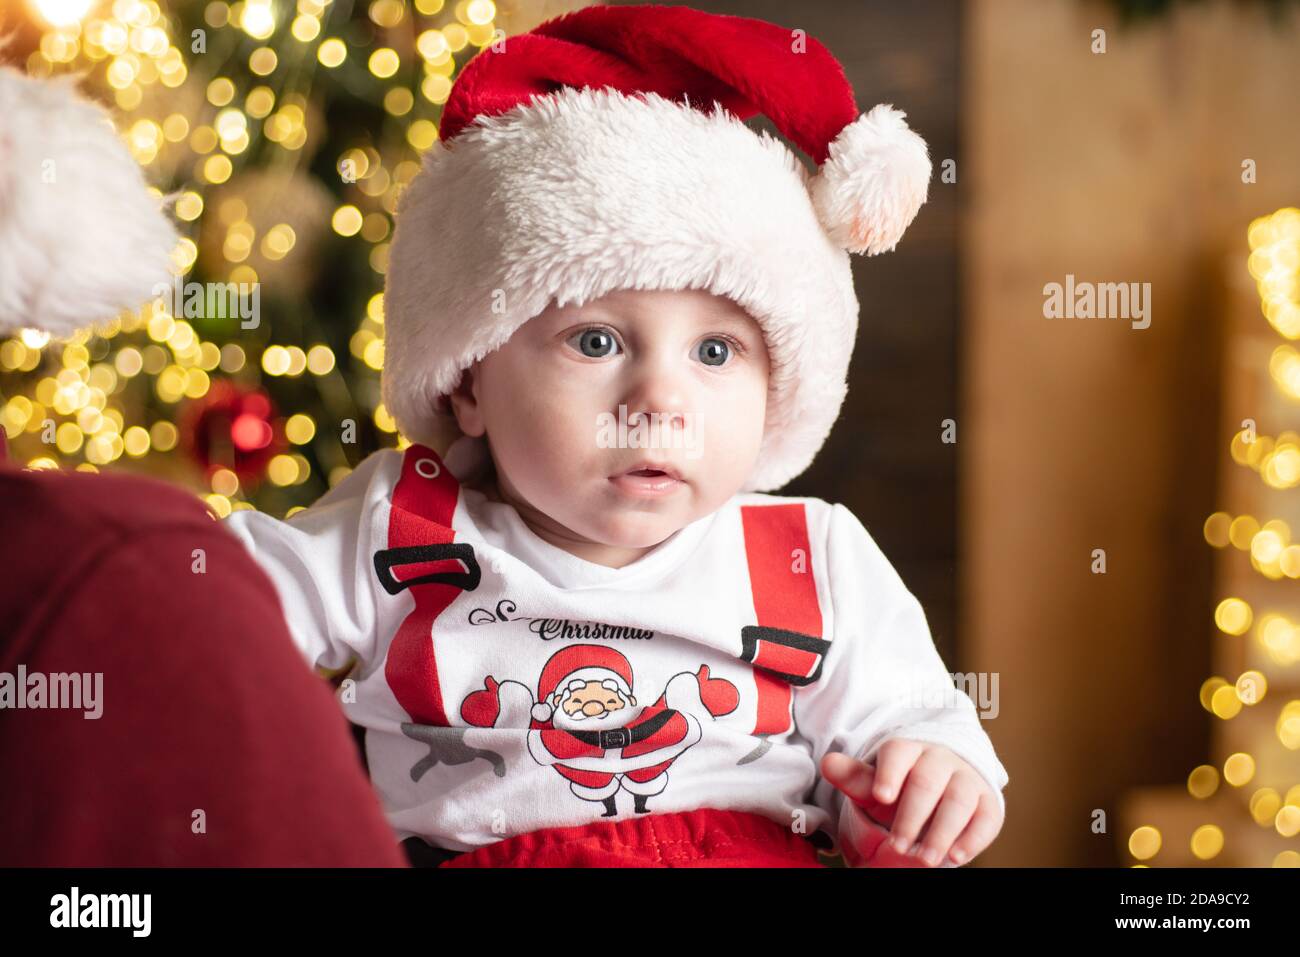 Kleines Baby im Weihnachtsmütze feiert Weihnachten. Kleinkind mit roter  Neujahrskappe. Weihnachten Grußkarte mit niedlichen Babys Stockfotografie -  Alamy